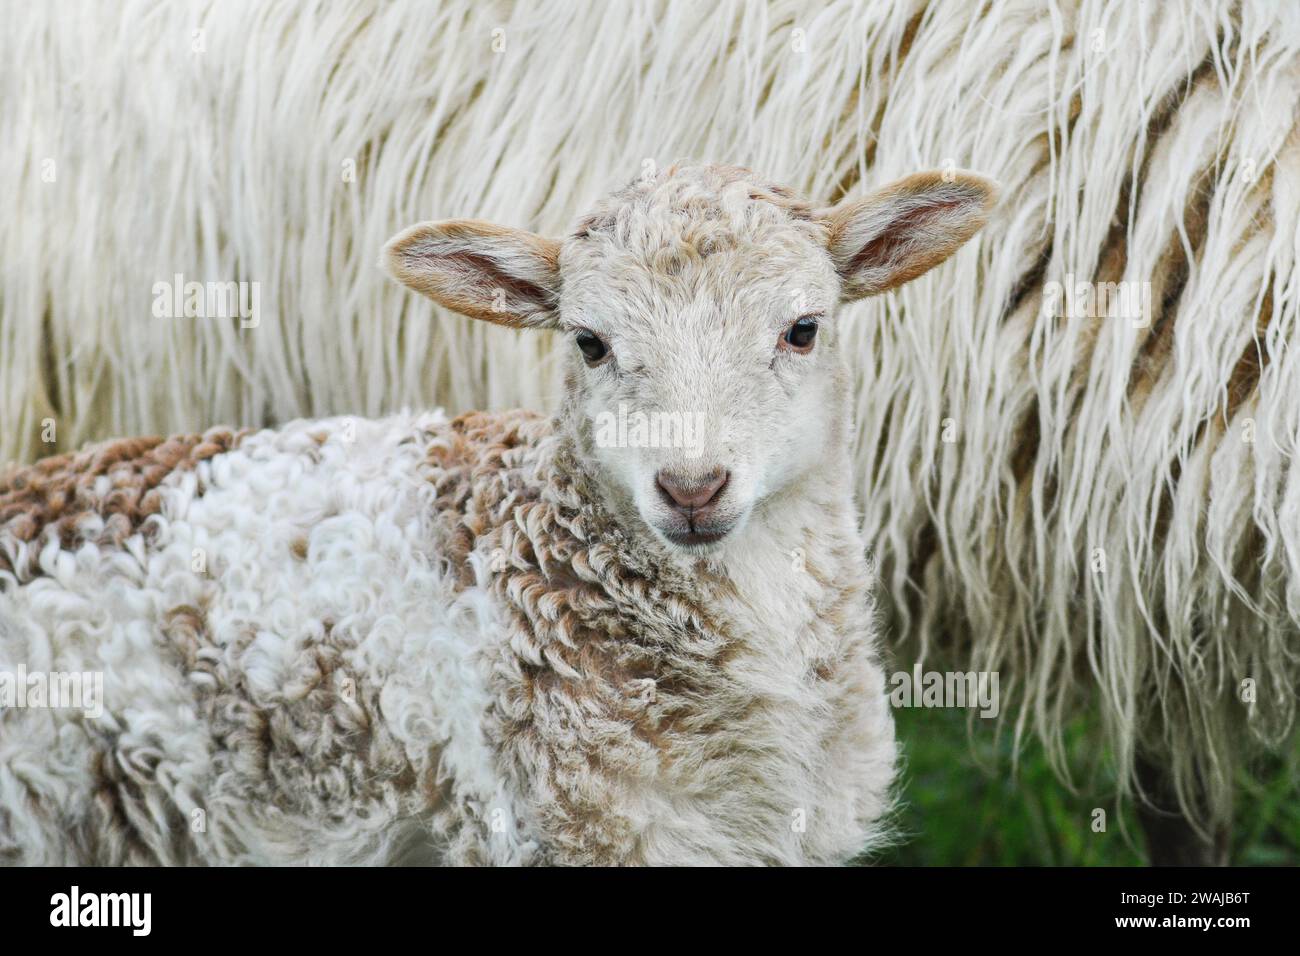 Ein junges Lamm mit einem weichen, gemusterten Fell schmiegt sich an das dicke, weiße Vlies seiner Mutter, in einer zarten Verbundenheit Stockfoto